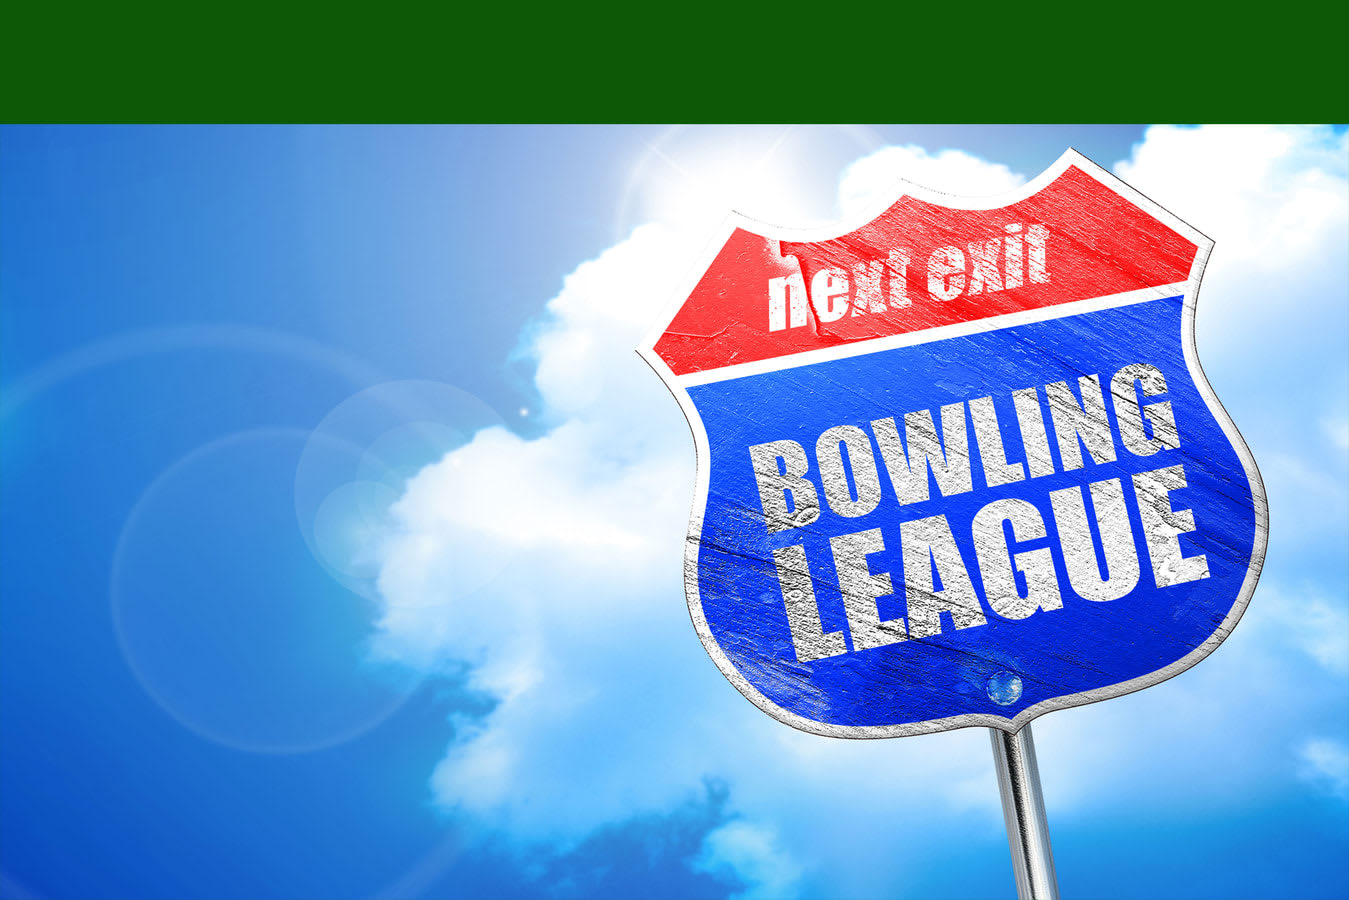 Next Exit Bowling Leagues